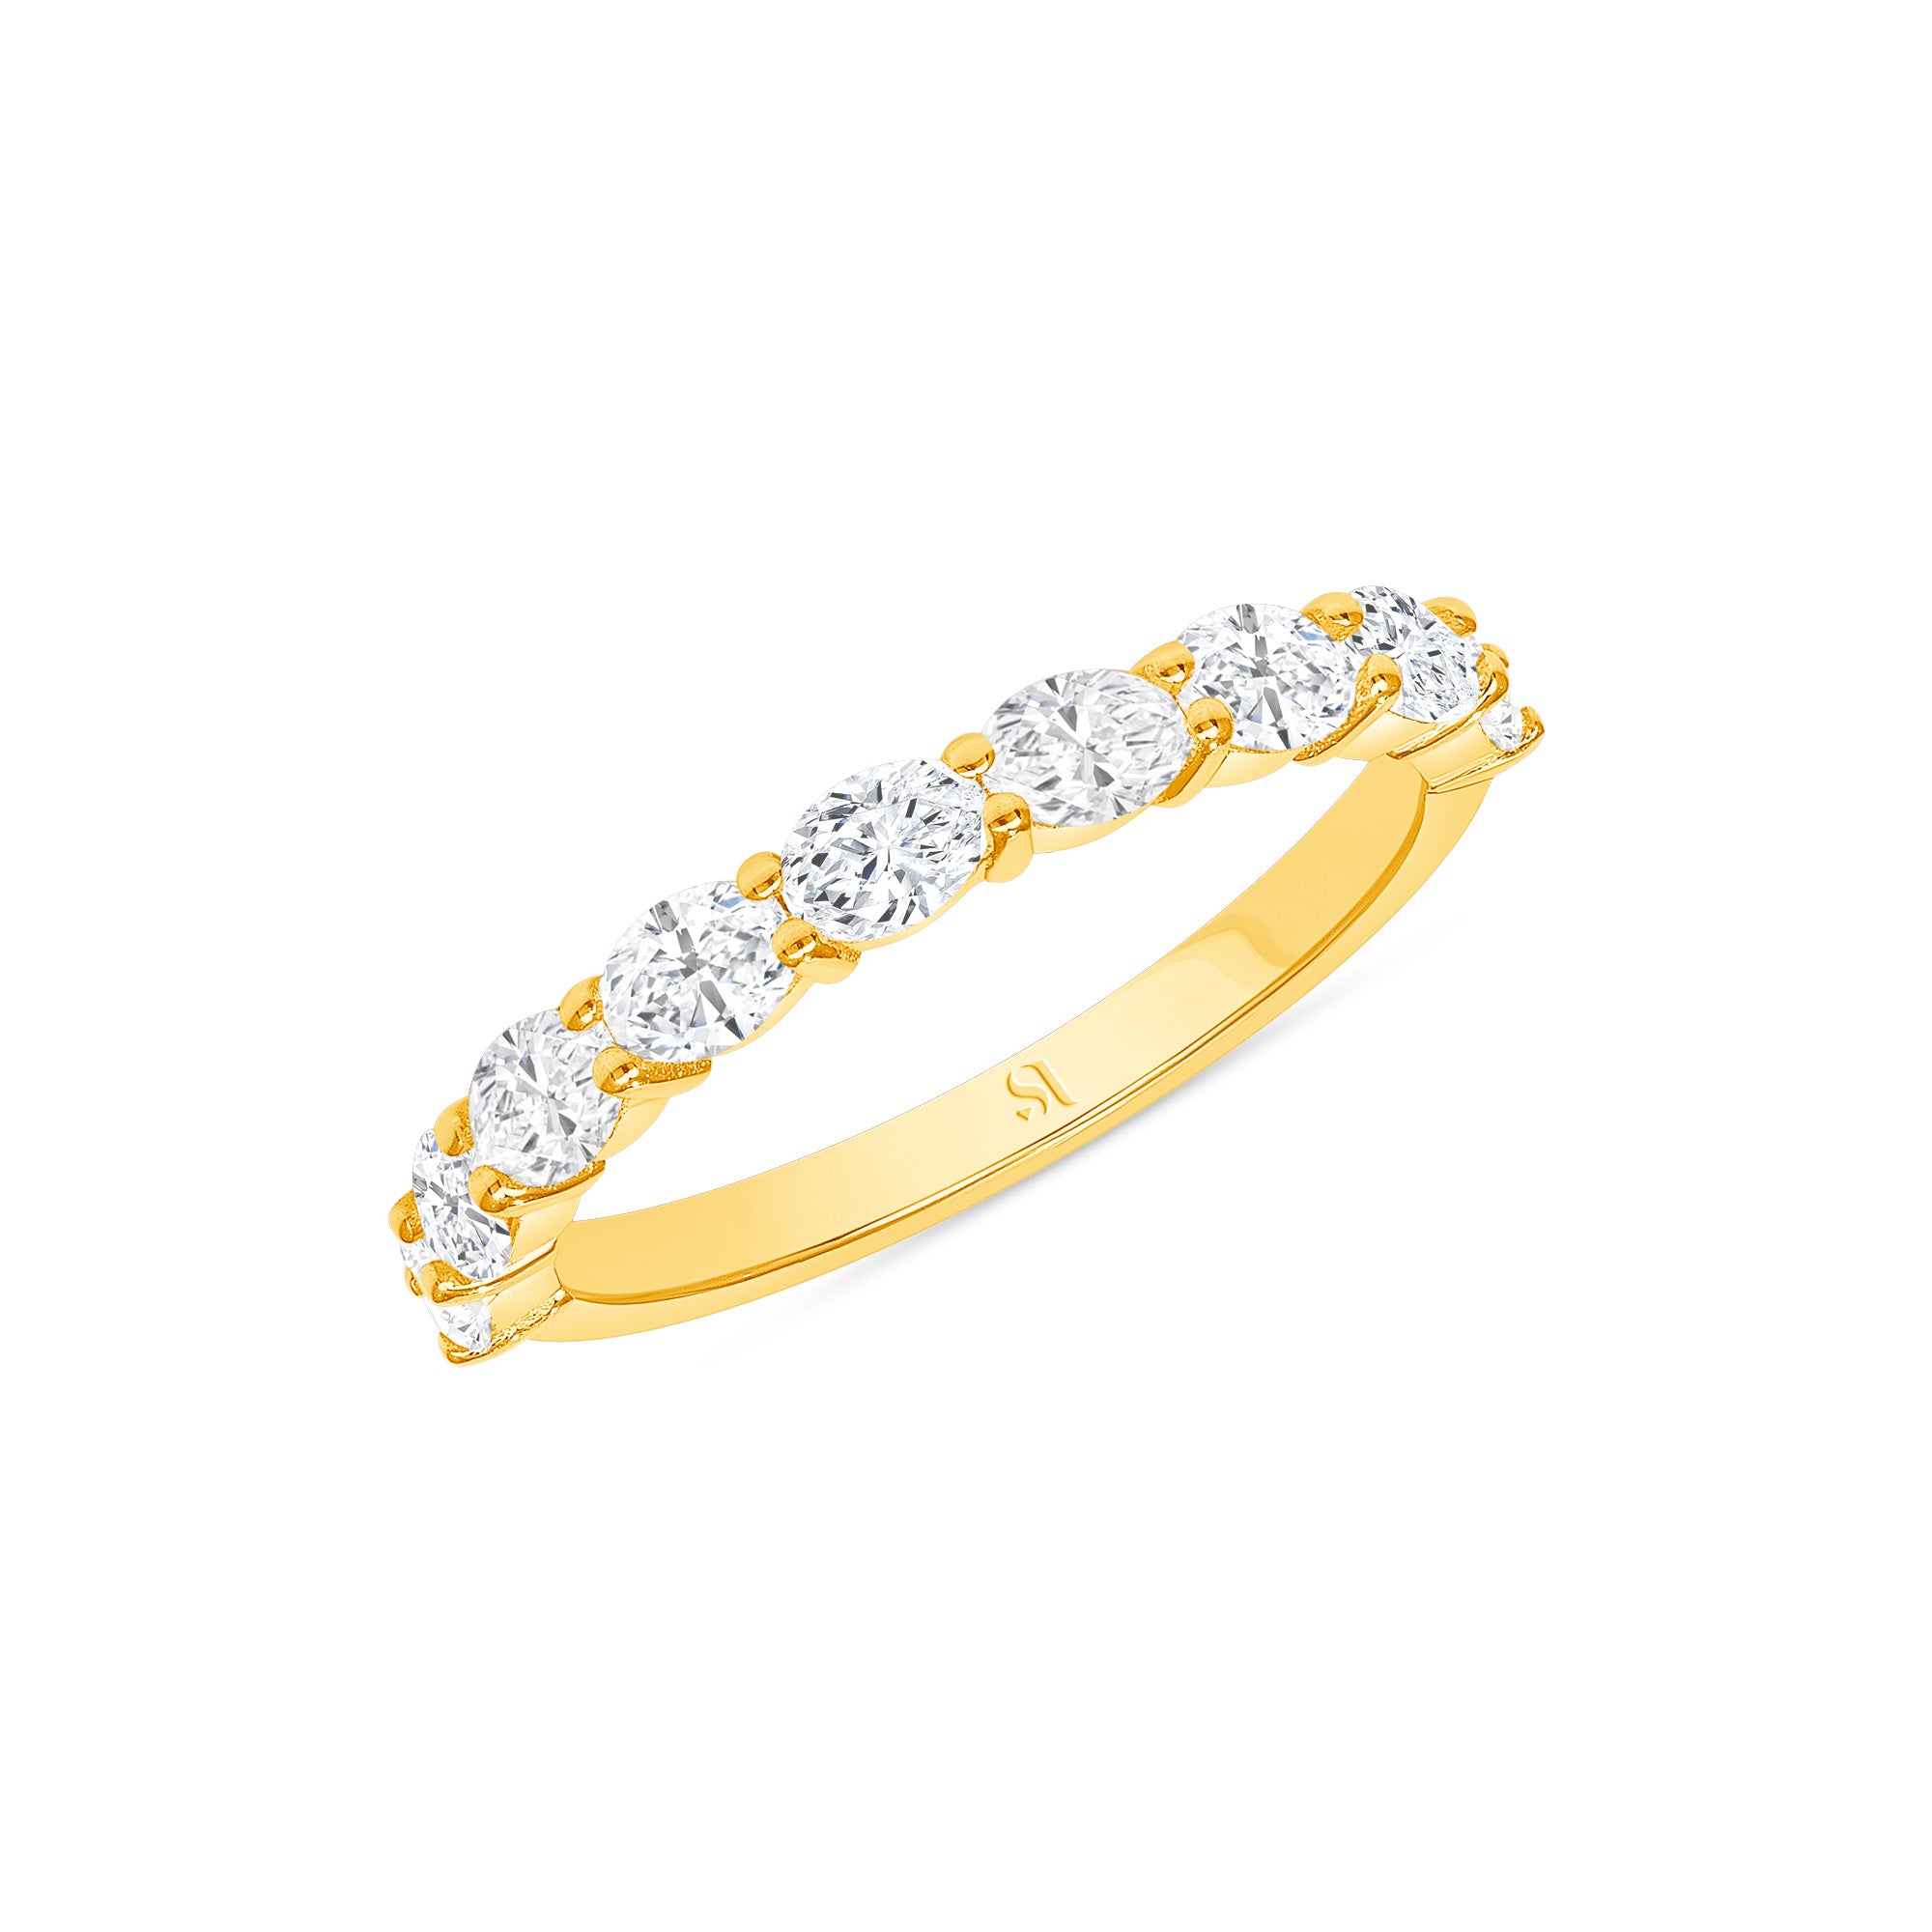 Diamond & Wood Wedding Ring With Rimu - Casavir Jewelry